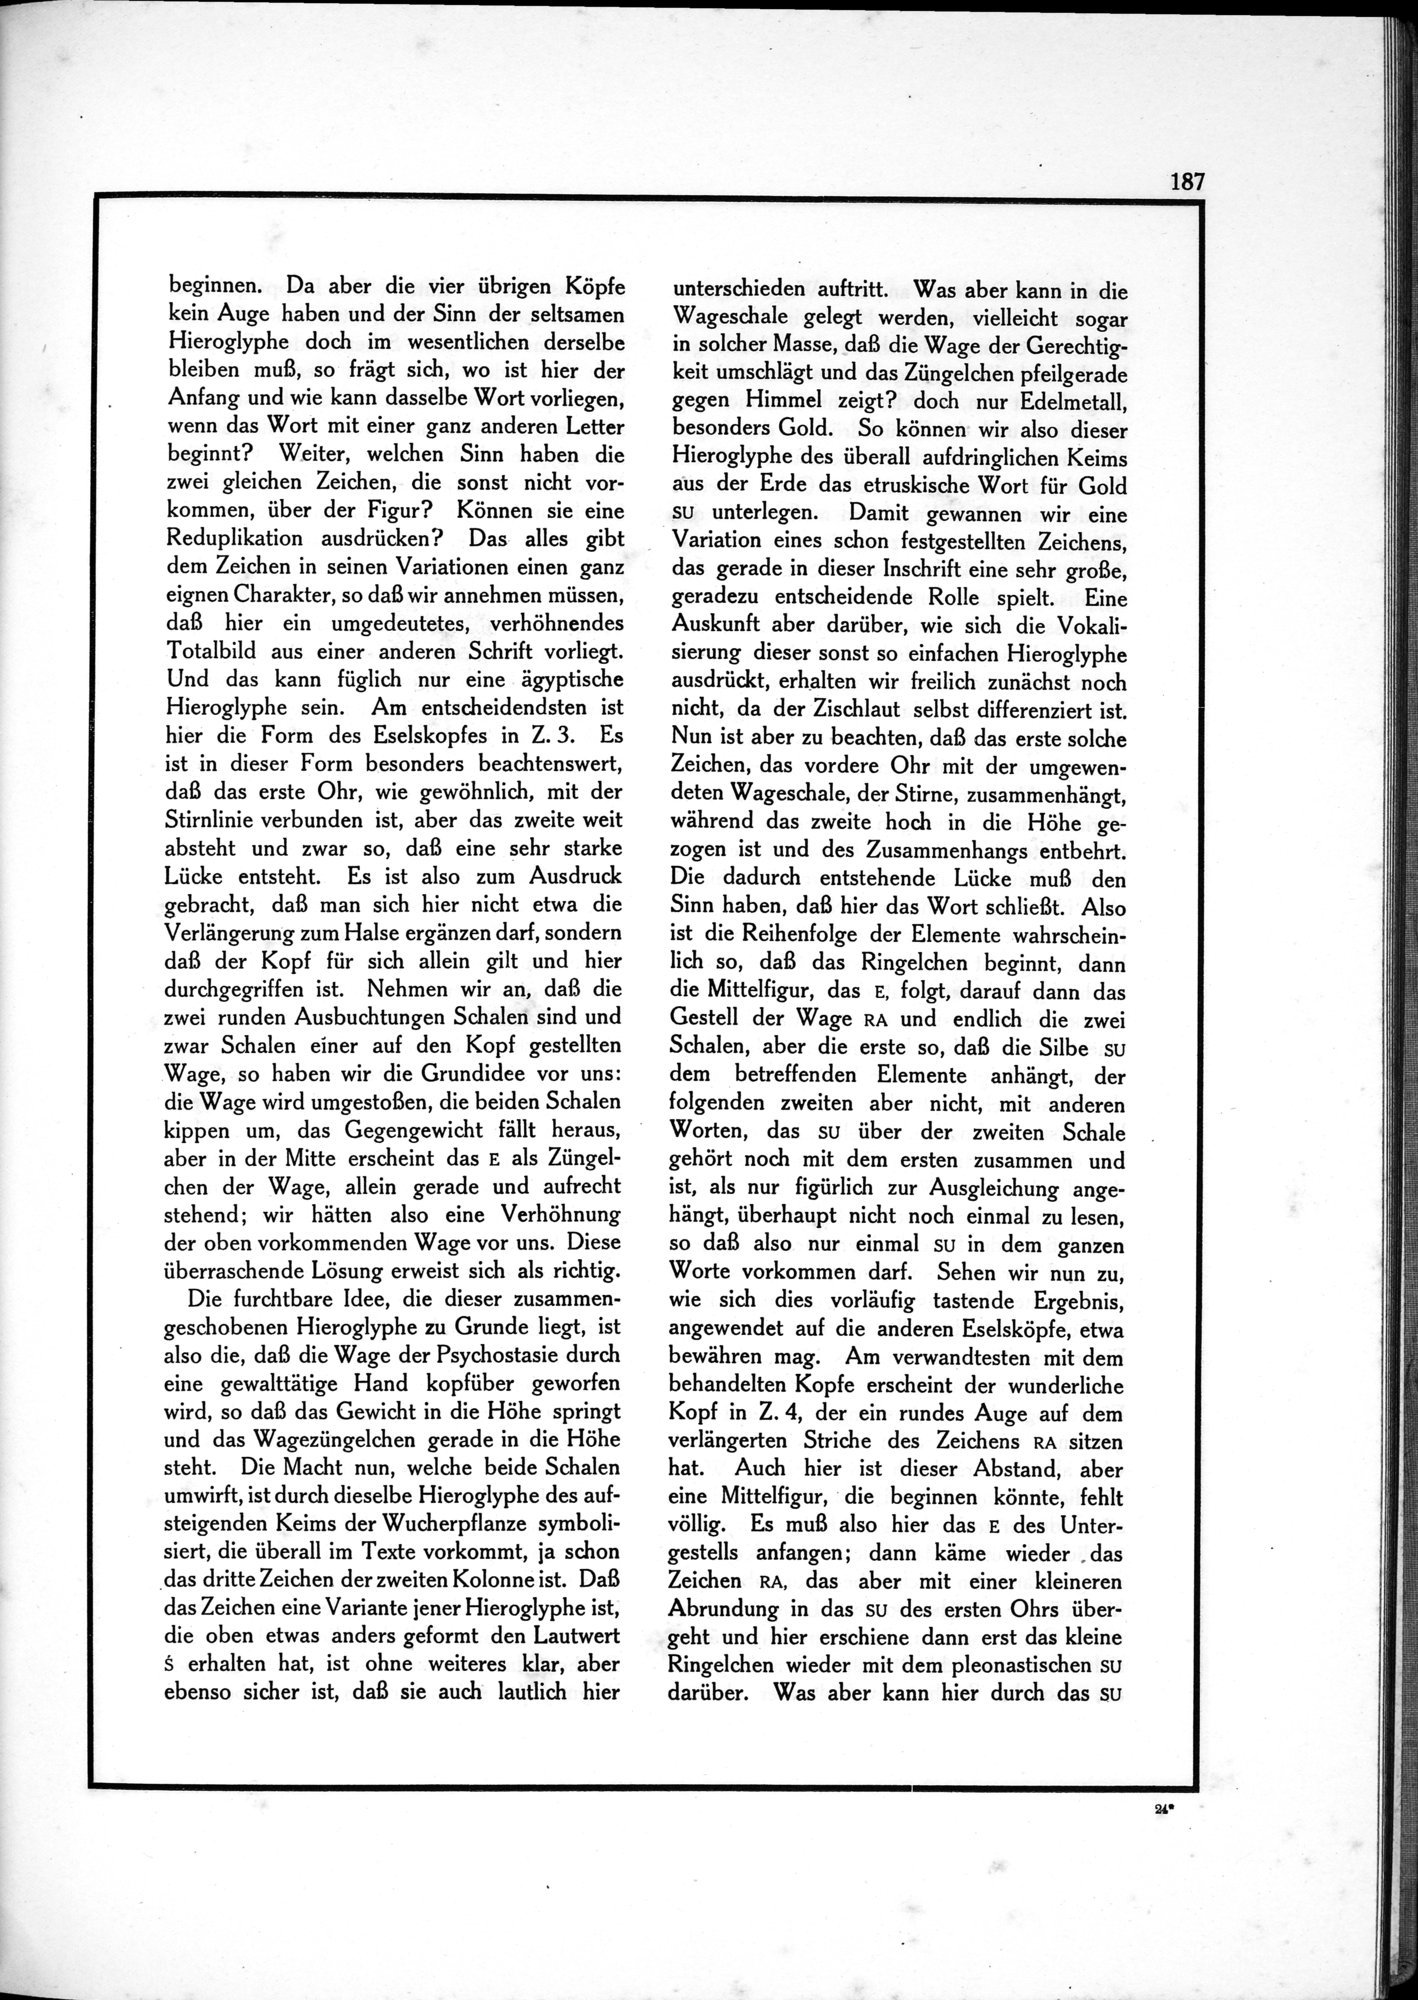 Die Teufel des Avesta und Ihre Beziehungen zur Ikonographie des Buddhismus Zentral-Asiens : vol.1 / Page 191 (Grayscale High Resolution Image)